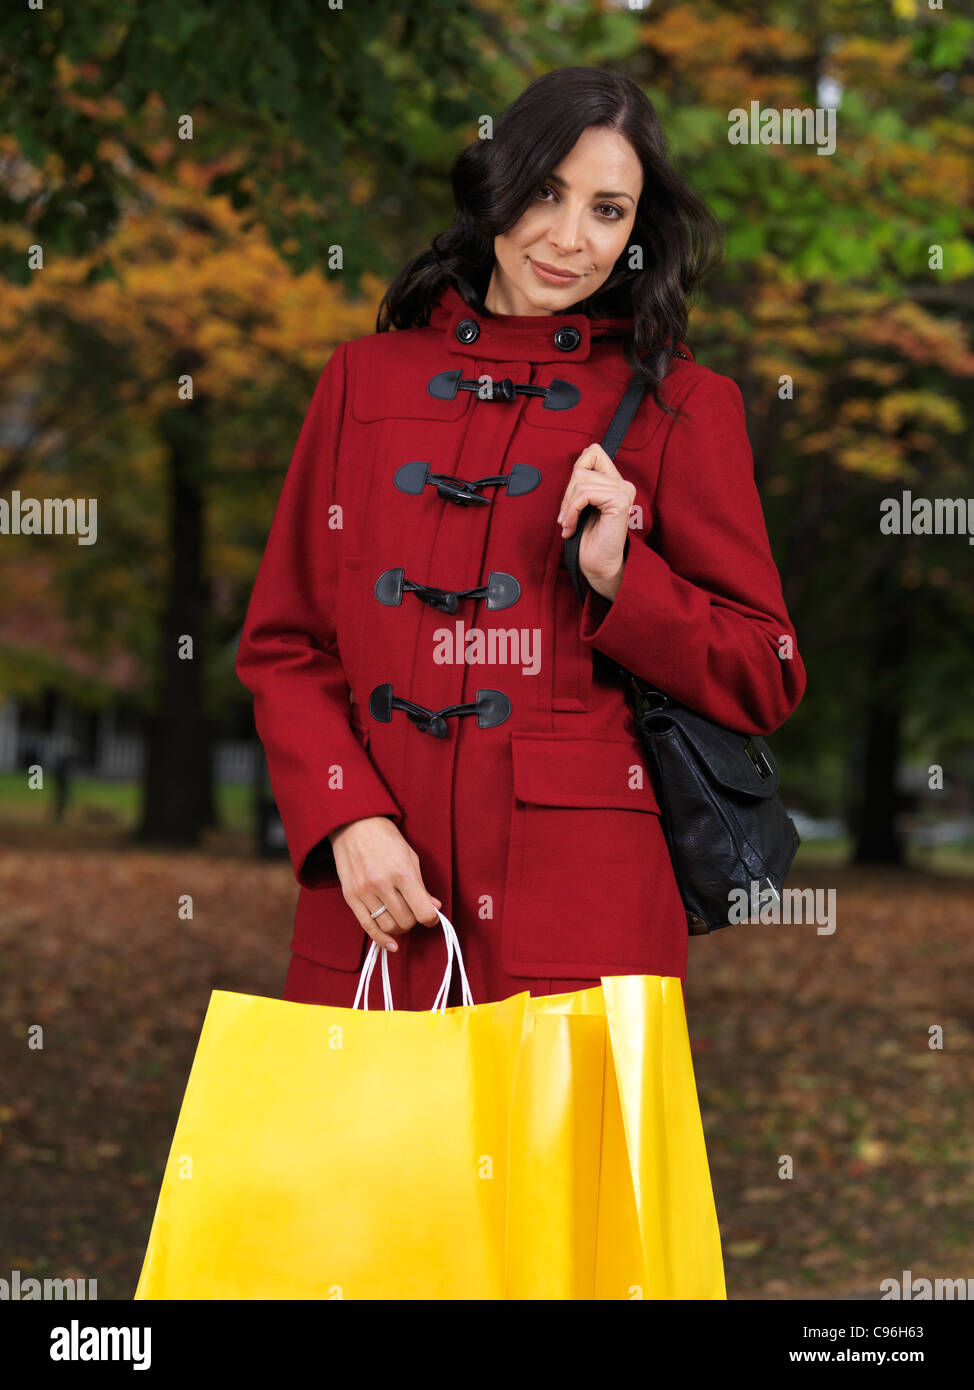 Hermosa joven mujer vistiendo una chaqueta roja y sosteniendo las bolsas de compras. Temporada de otoño de la moda. Foto de stock